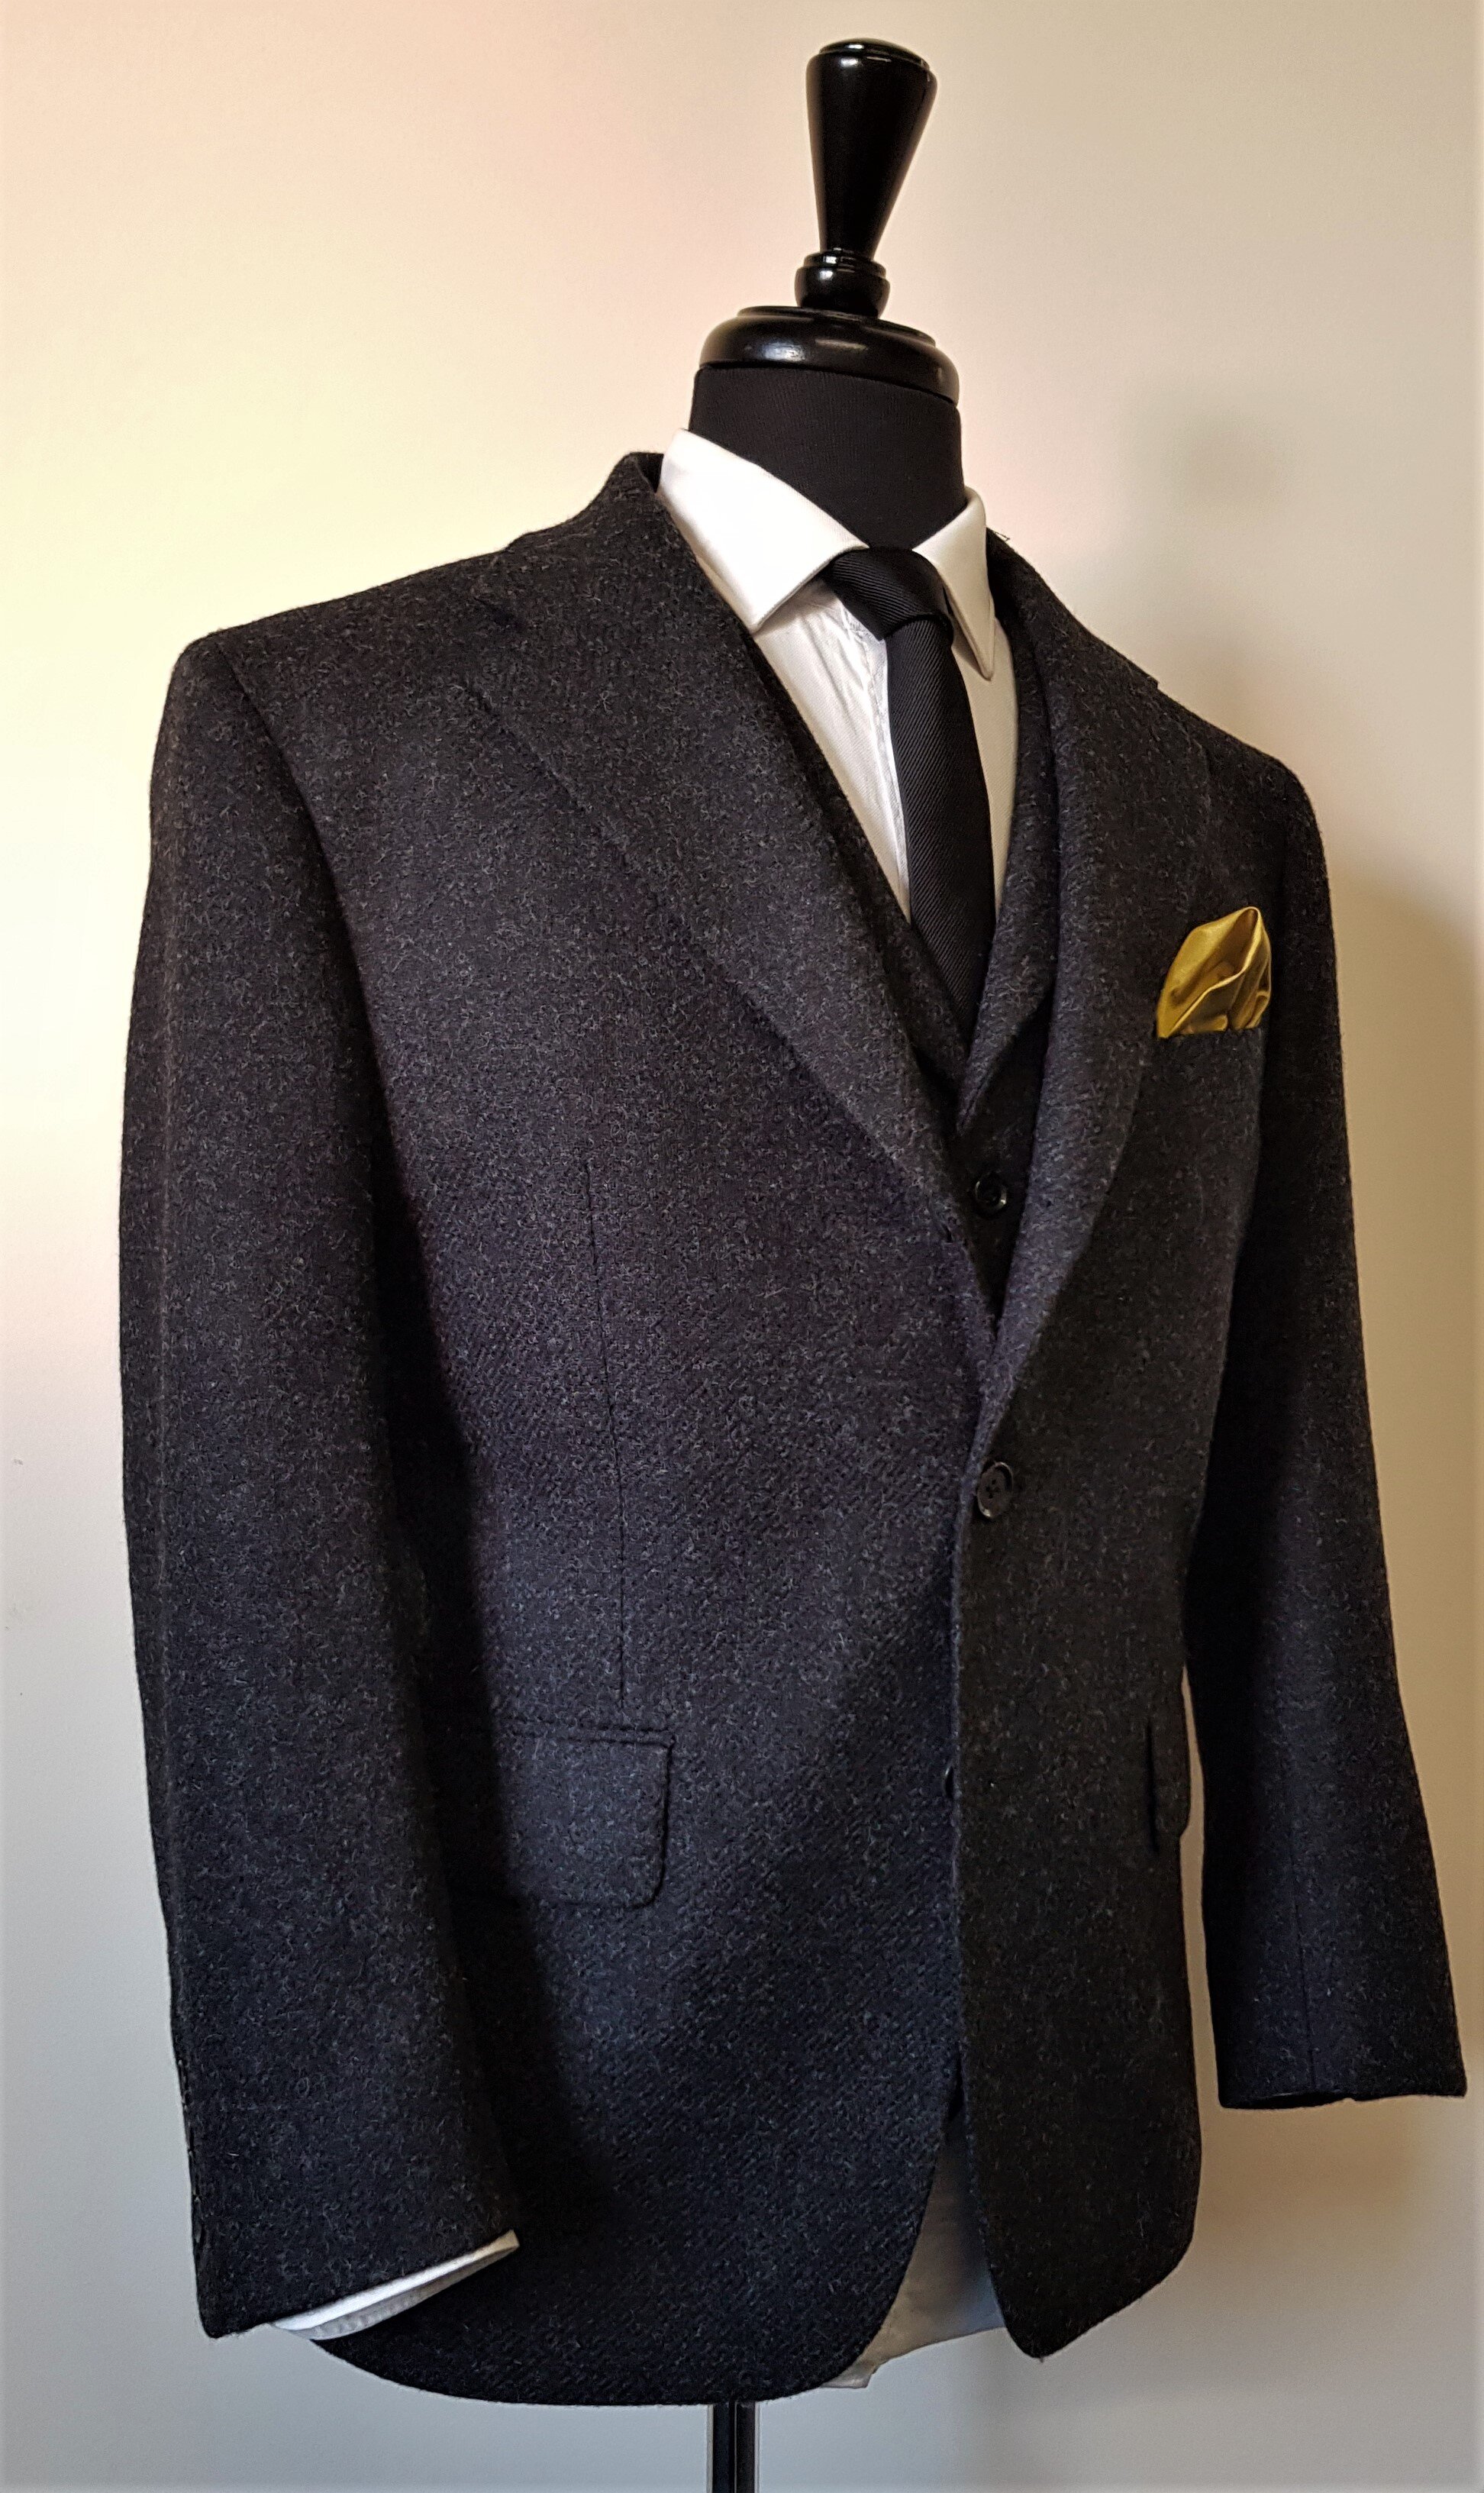 3 Piece Suit in Charcoal Shetland Tweed (6).jpg